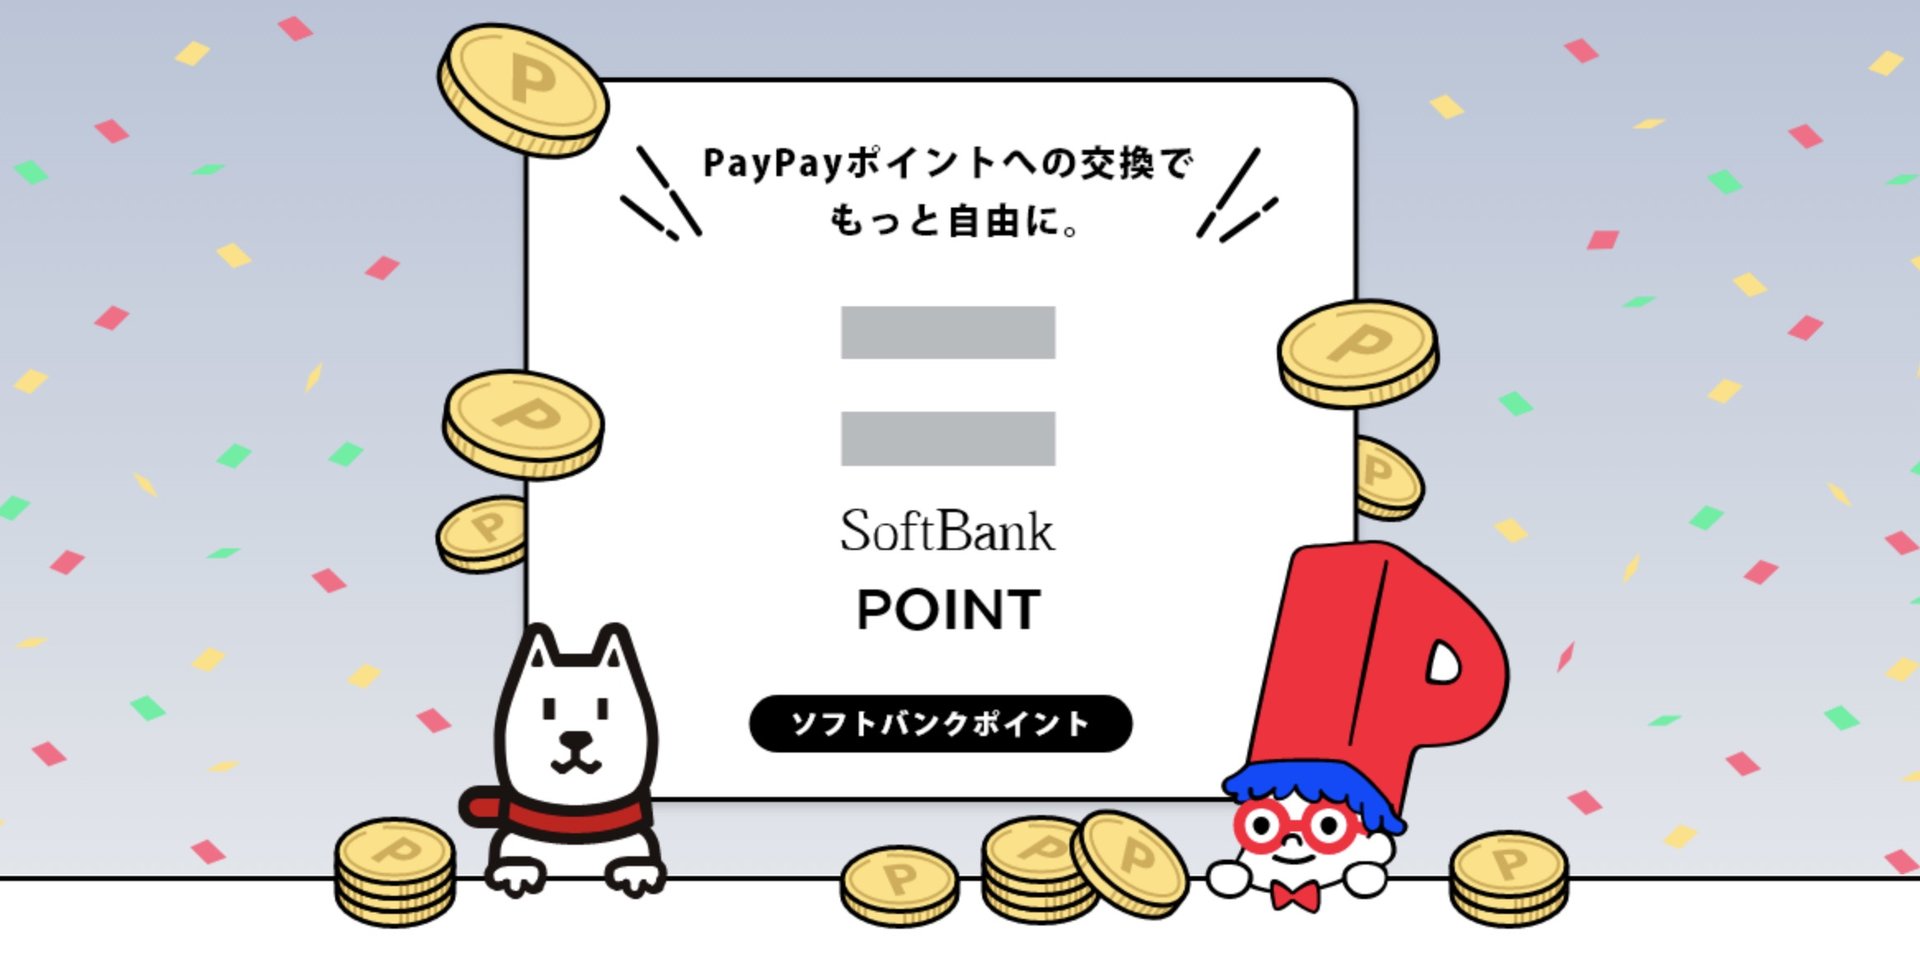 ソフトバンクポイント、PayPayカード以外での付与中止　23年5月から